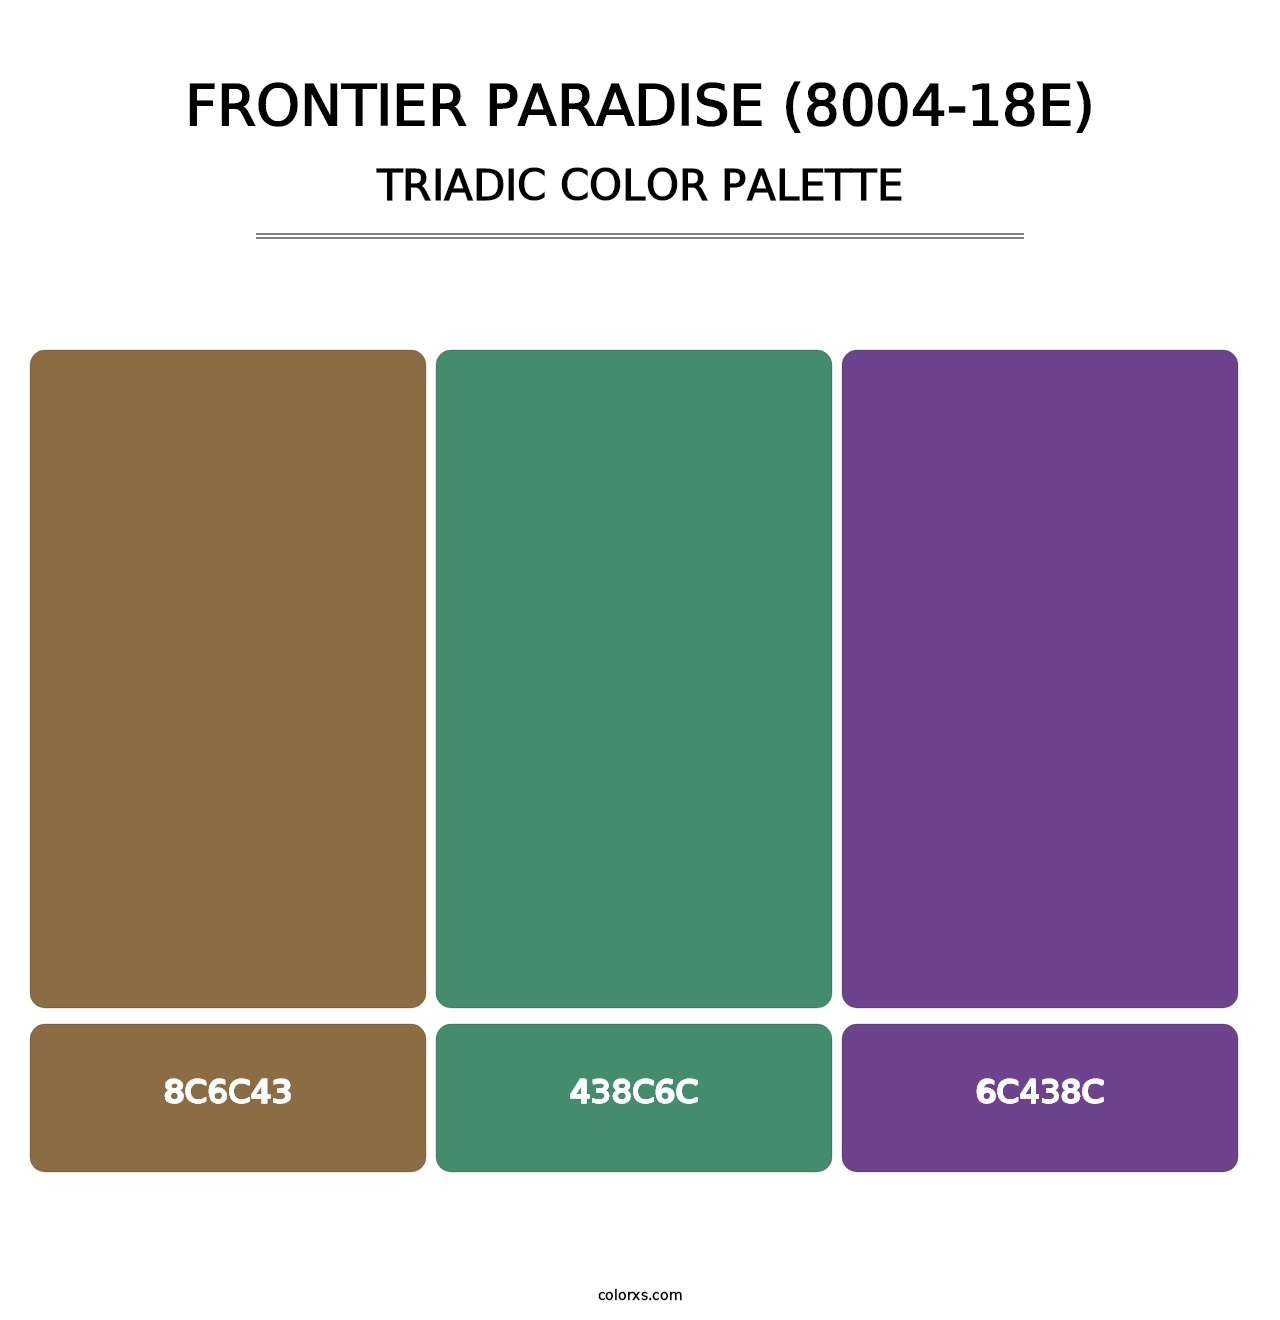 Frontier Paradise (8004-18E) - Triadic Color Palette